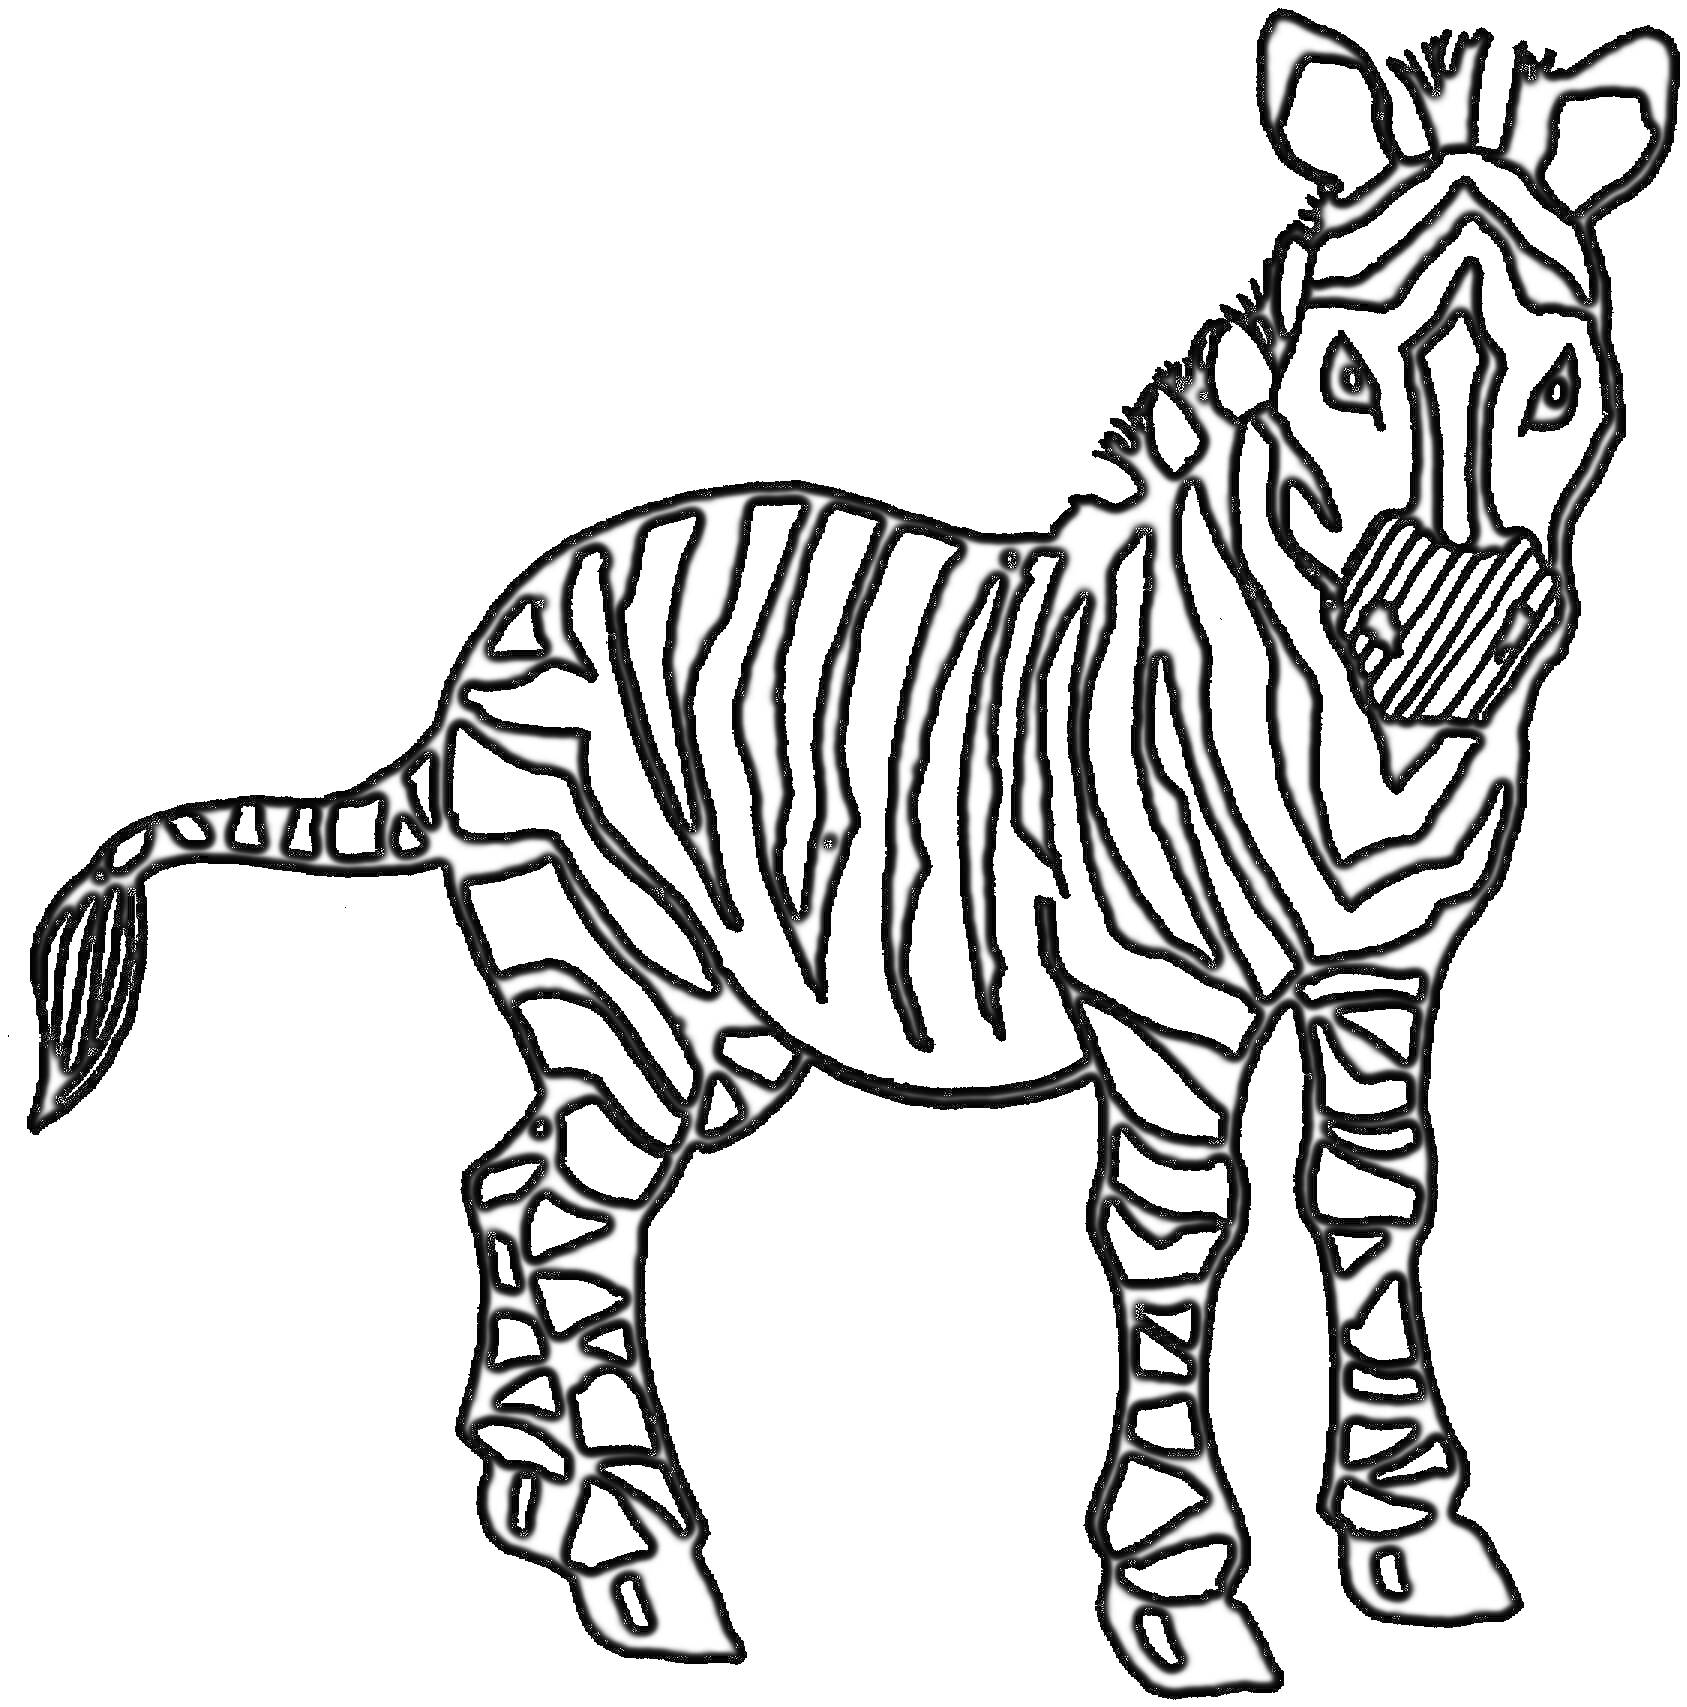 Раскраска Зебра с полосами, стоящая в профиль, с поднятыми ушами, смотрящая прямо